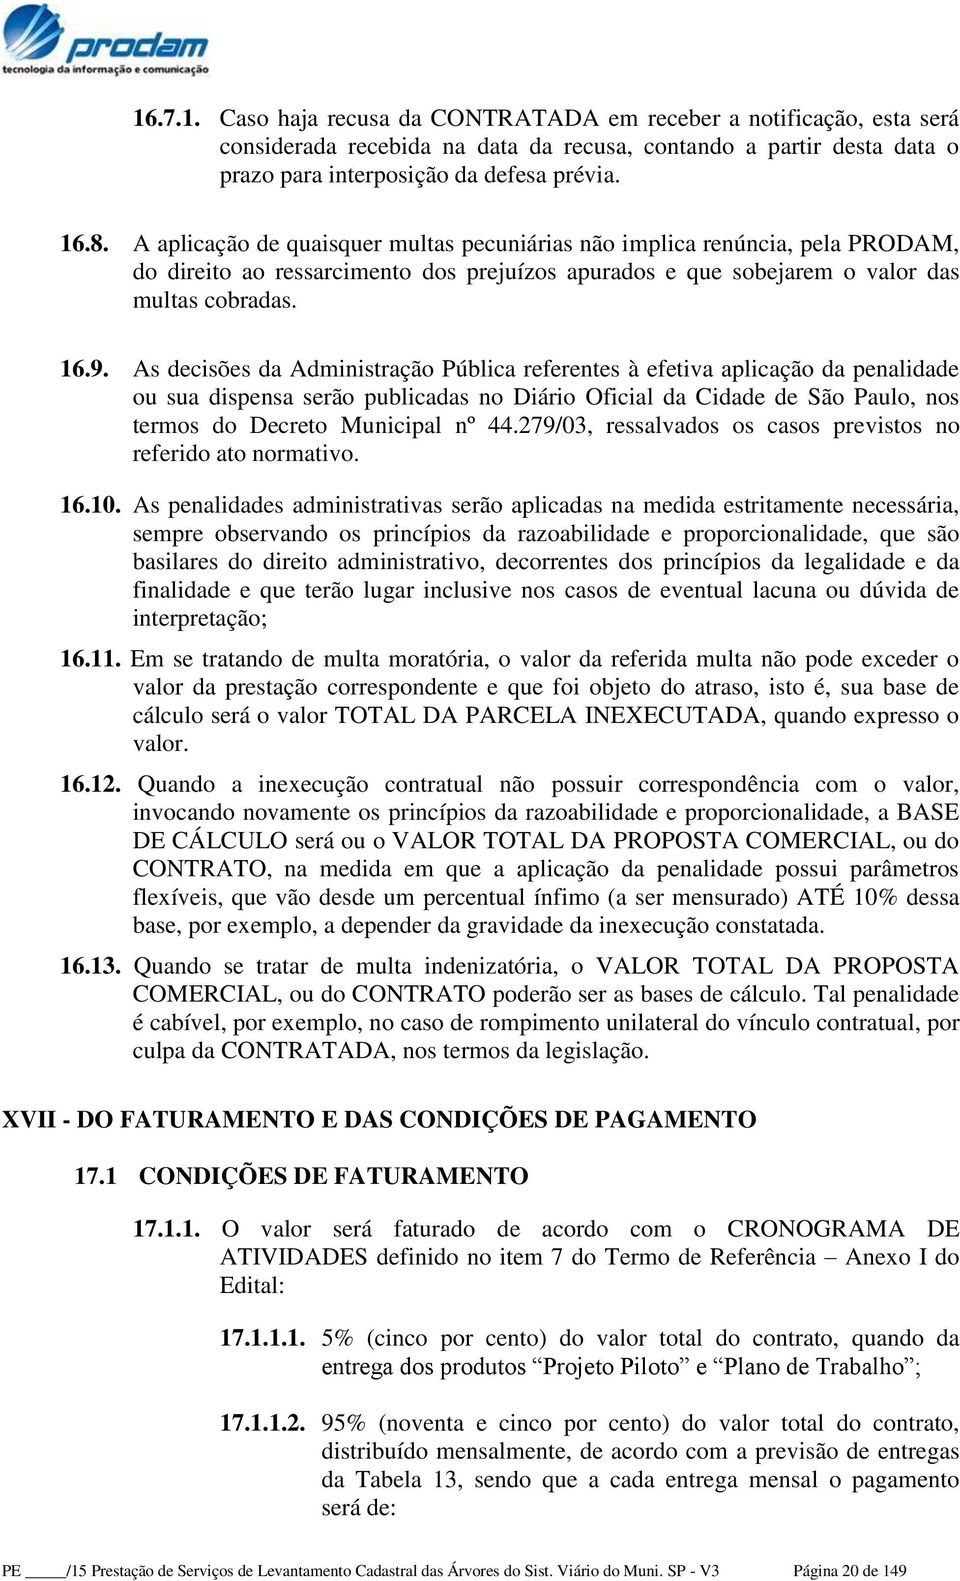 As decisões da Administração Pública referentes à efetiva aplicação da penalidade ou sua dispensa serão publicadas no Diário Oficial da Cidade de São Paulo, nos termos do Decreto Municipal nº 44.